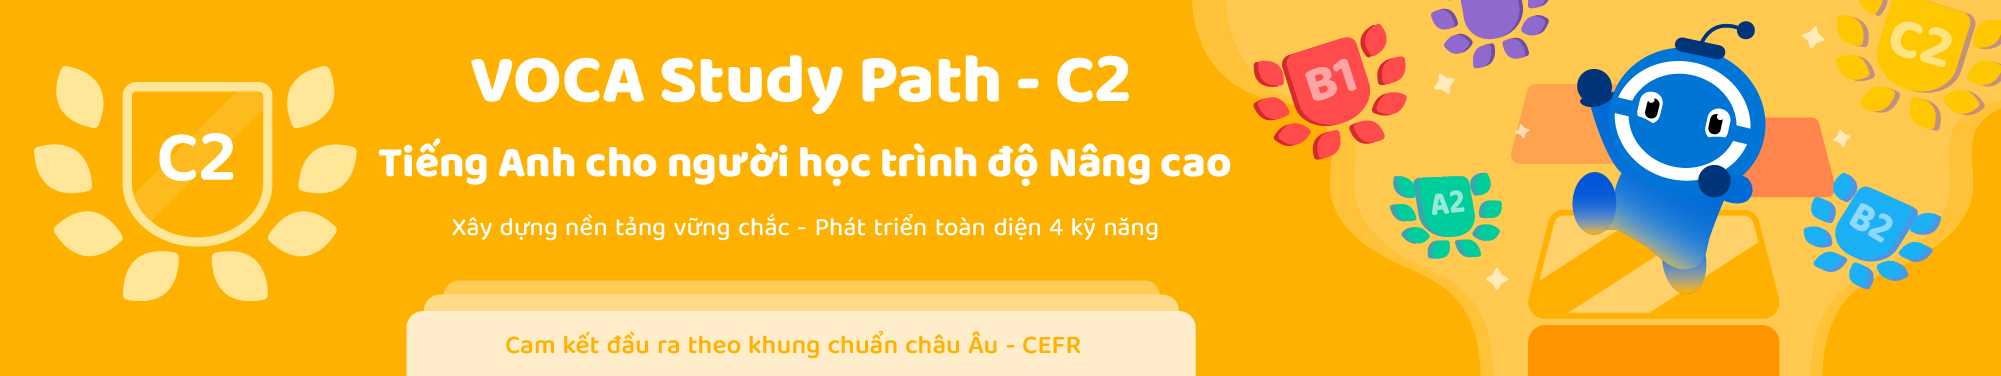 VOCA Study Path (CEFR) - Level C2 banner